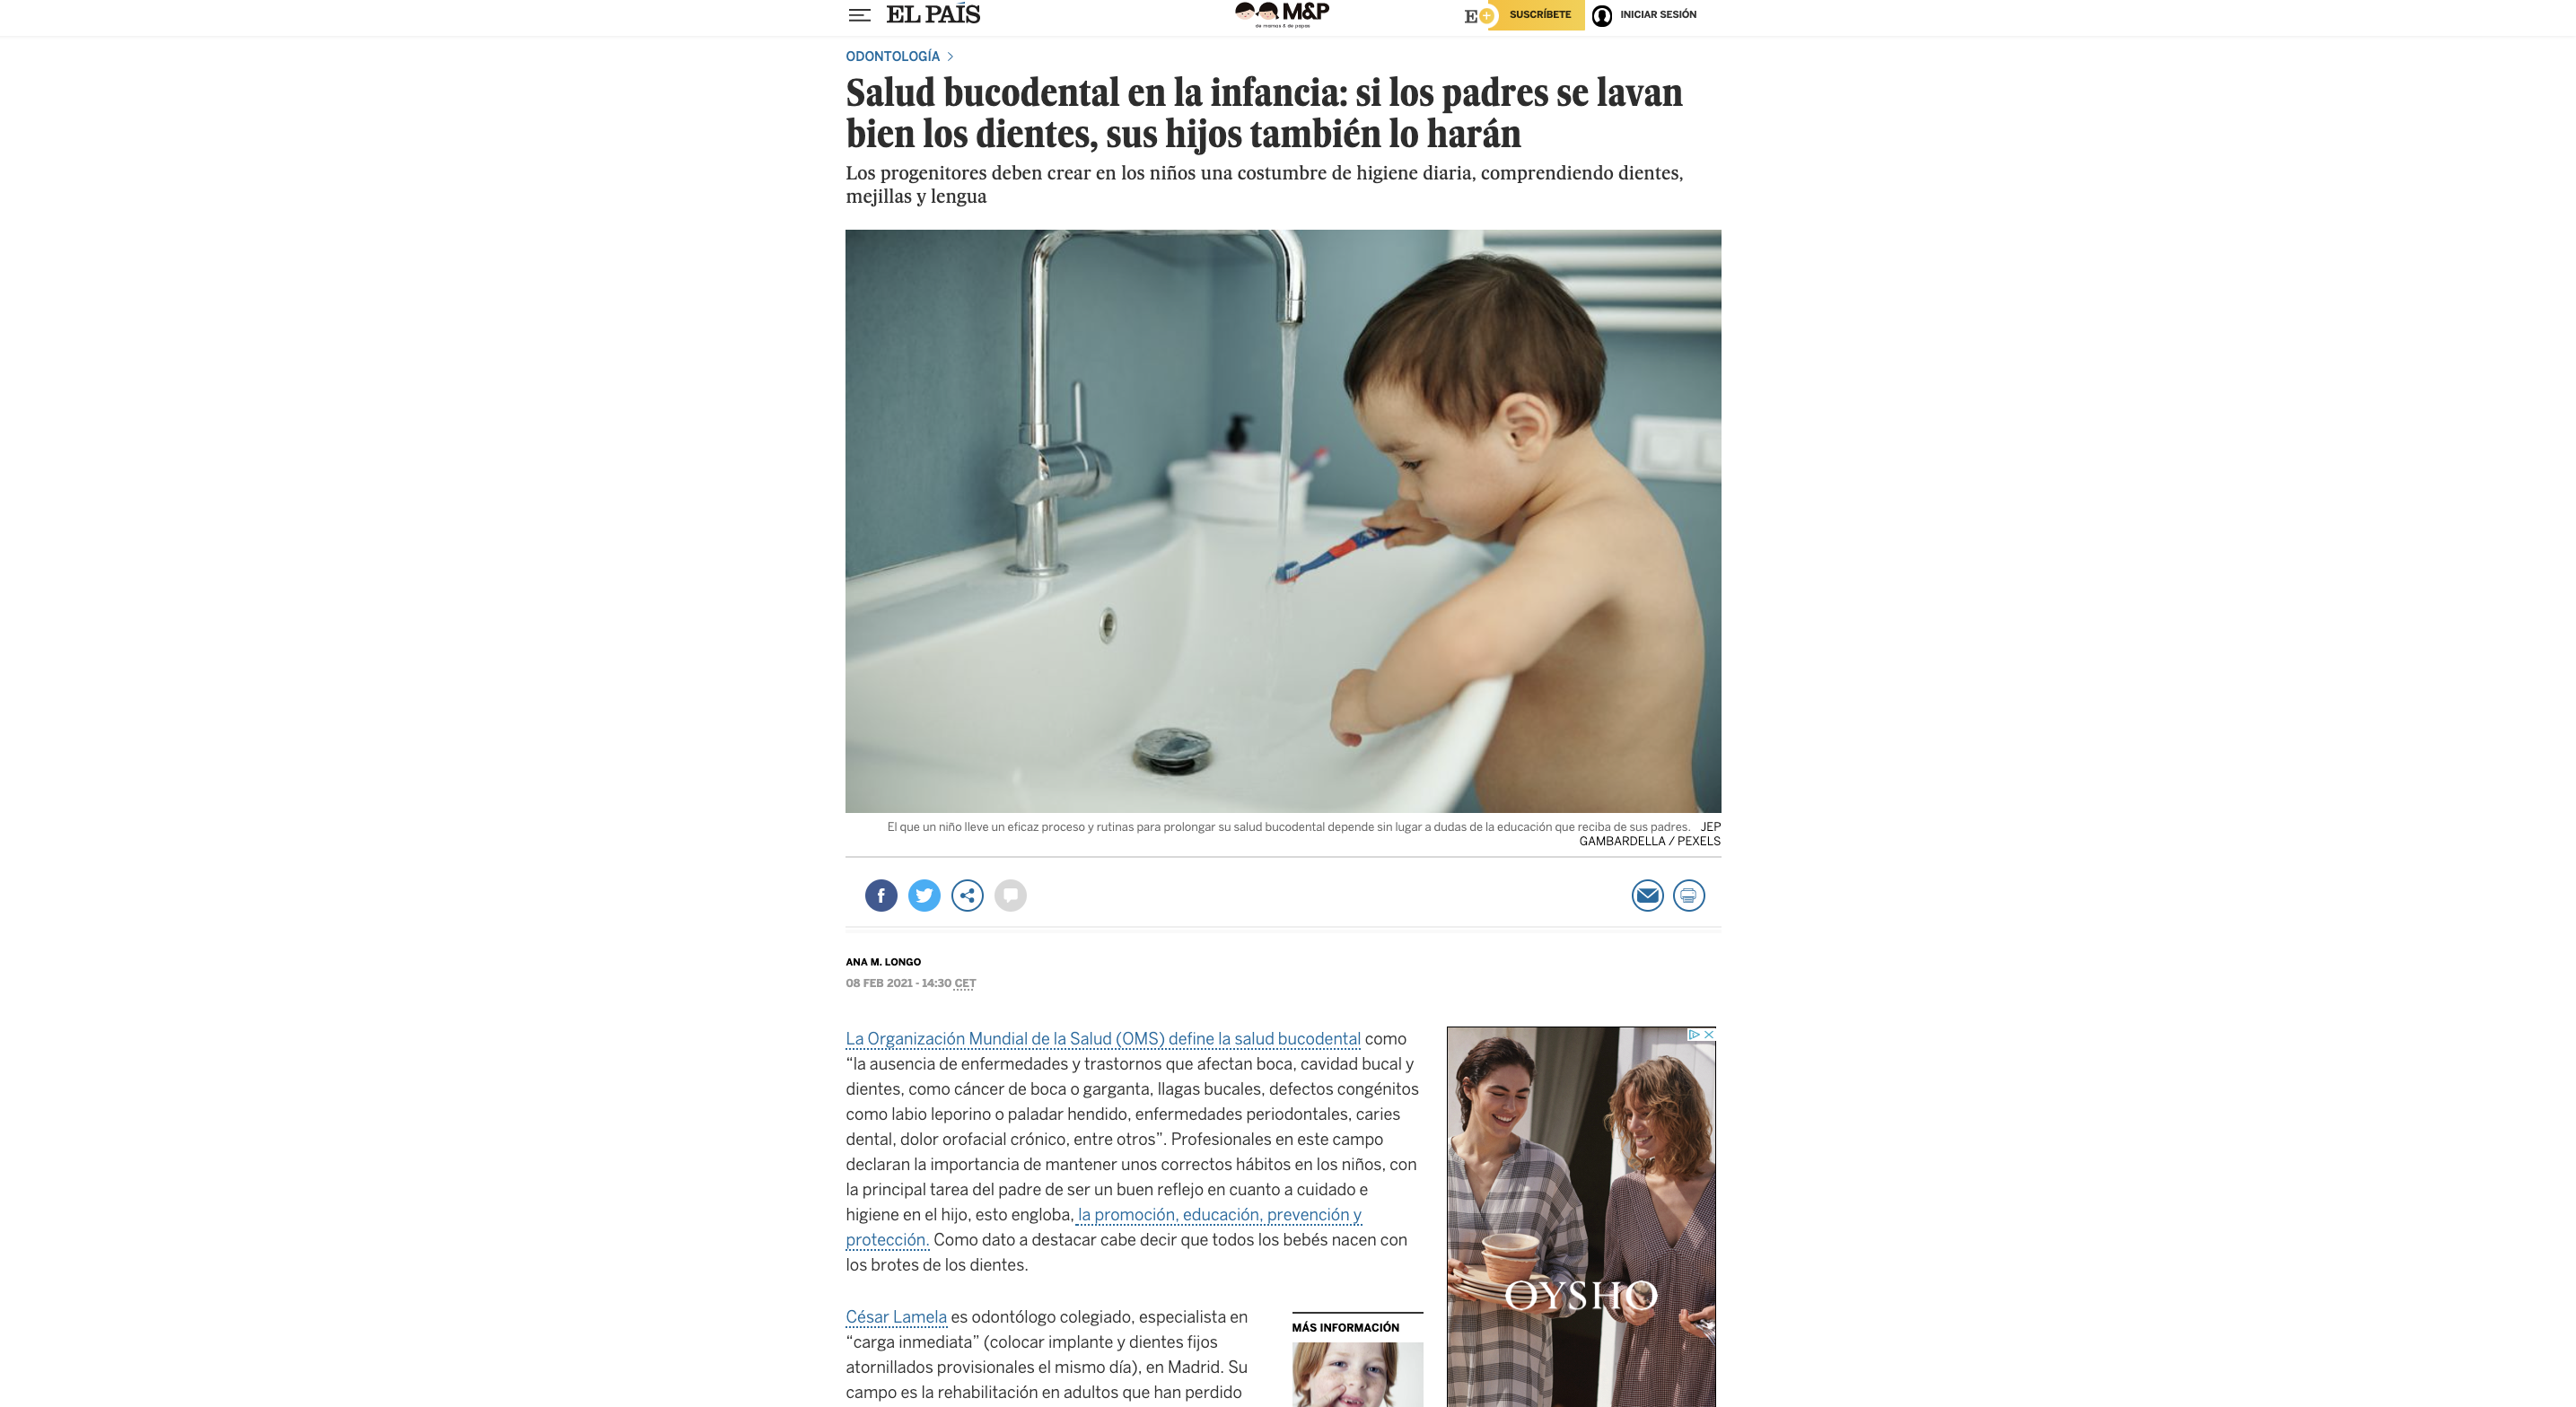 Salud bucodental en la infancia: si los padres se lavan bien los dientes, sus hijos también lo harán